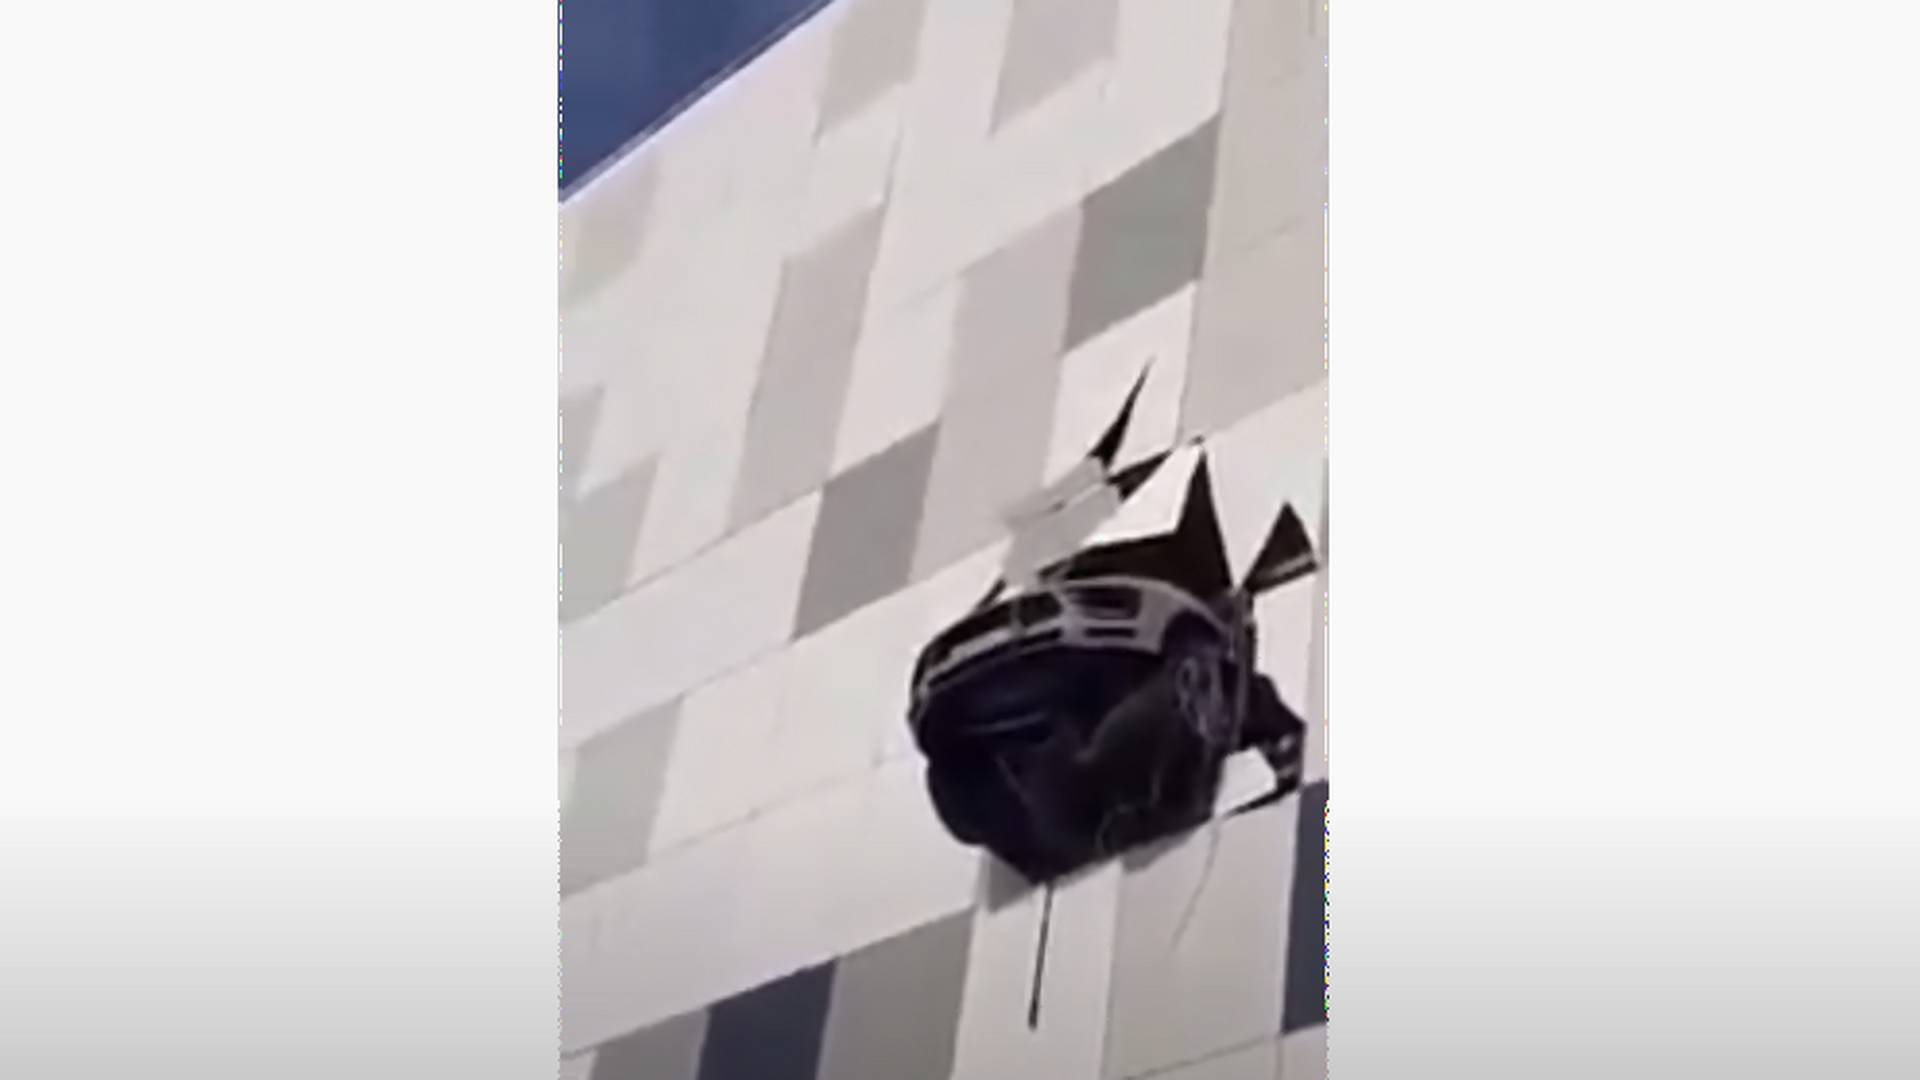 A "szentlélek tartotta" a Porsche Macan-t, ami majdnem kizuhant egy parkolóház épületéből - videó